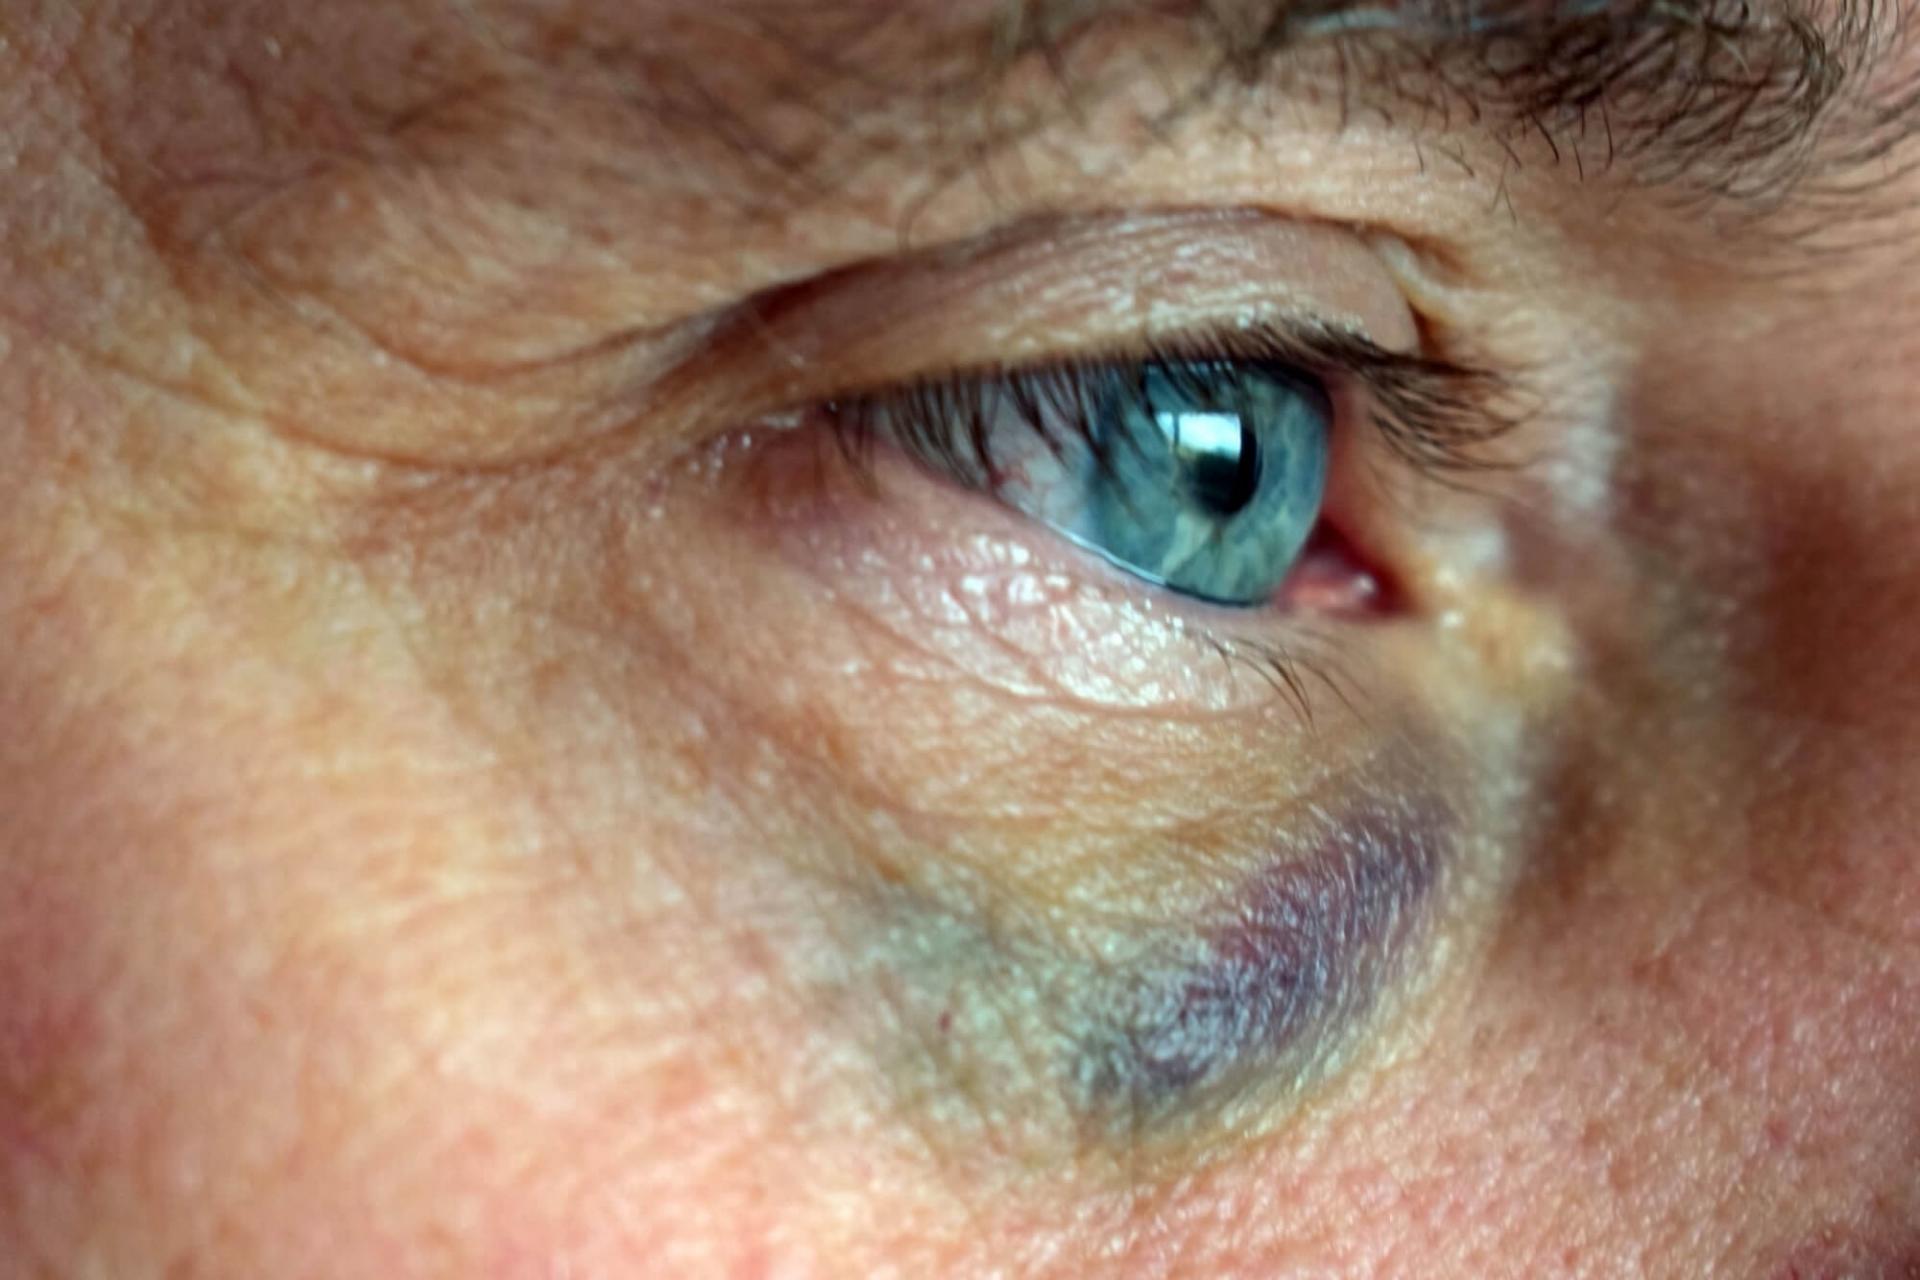 A causa di un forte impatto, i vasi sanguigni dell'occhio possono scoppiare e la parte bianca dell'occhio (la sclera) apparirà rossa e iniettata di sangue.